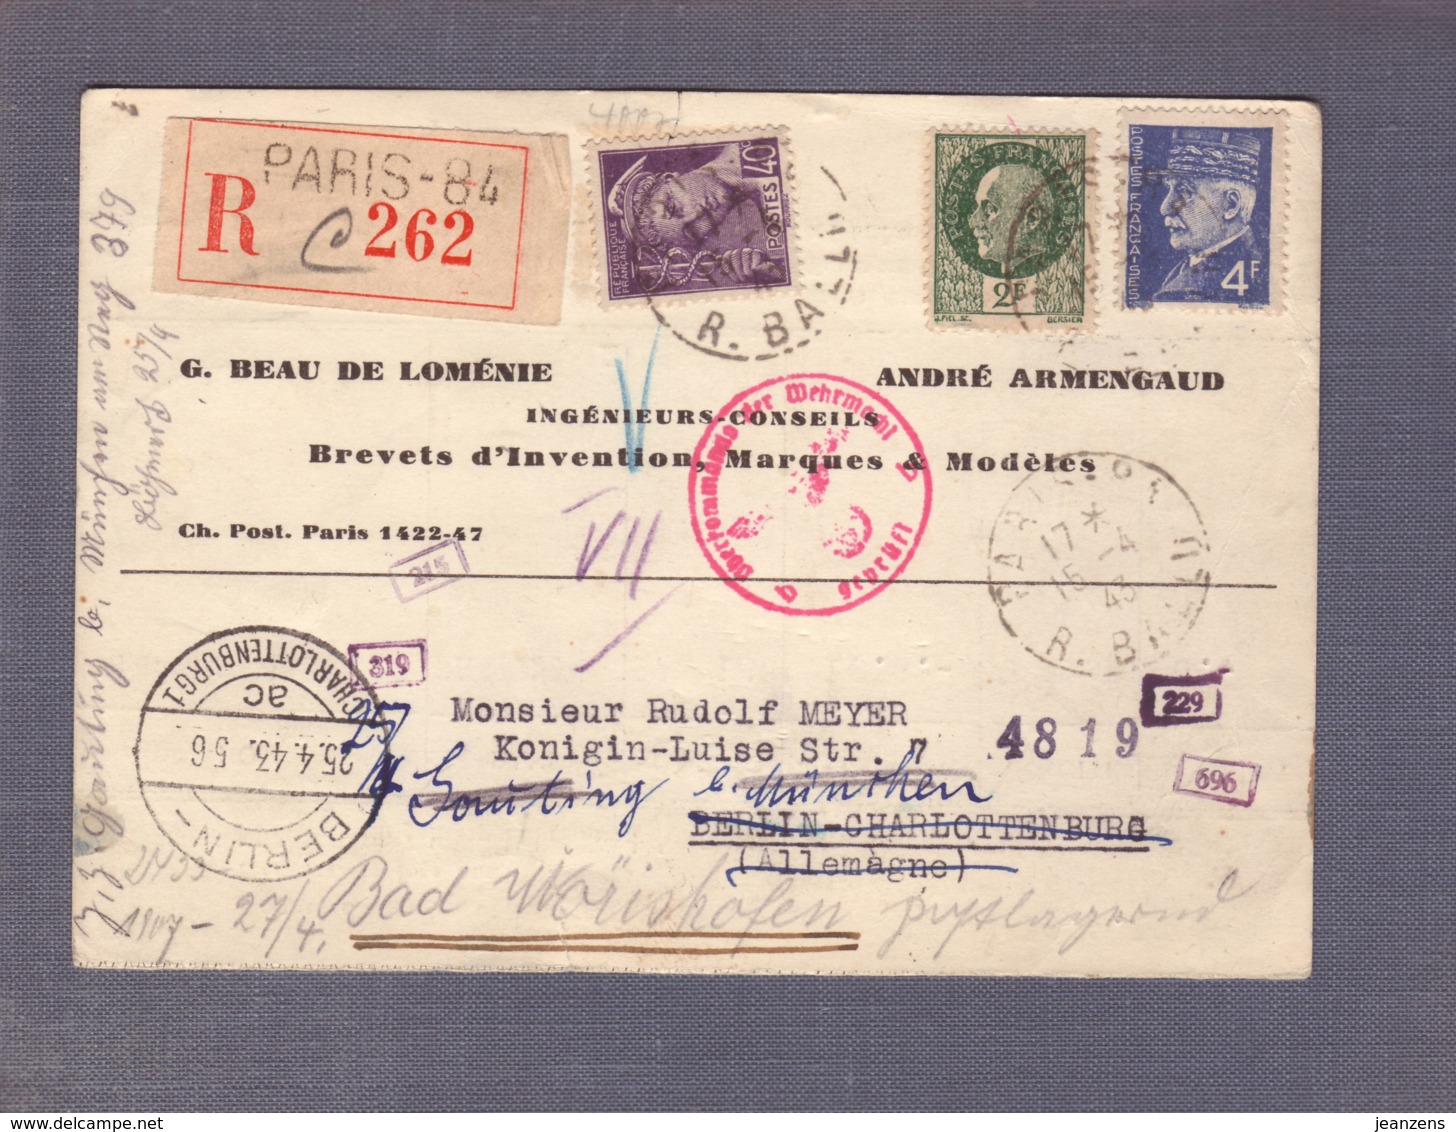 C.P. Reco 262"Ingénieurs-conseils" Obl. Paris 84 - 15.04.1943- Zensur/Censored/Censure E+b Combinaison Pas Courante! - WW II